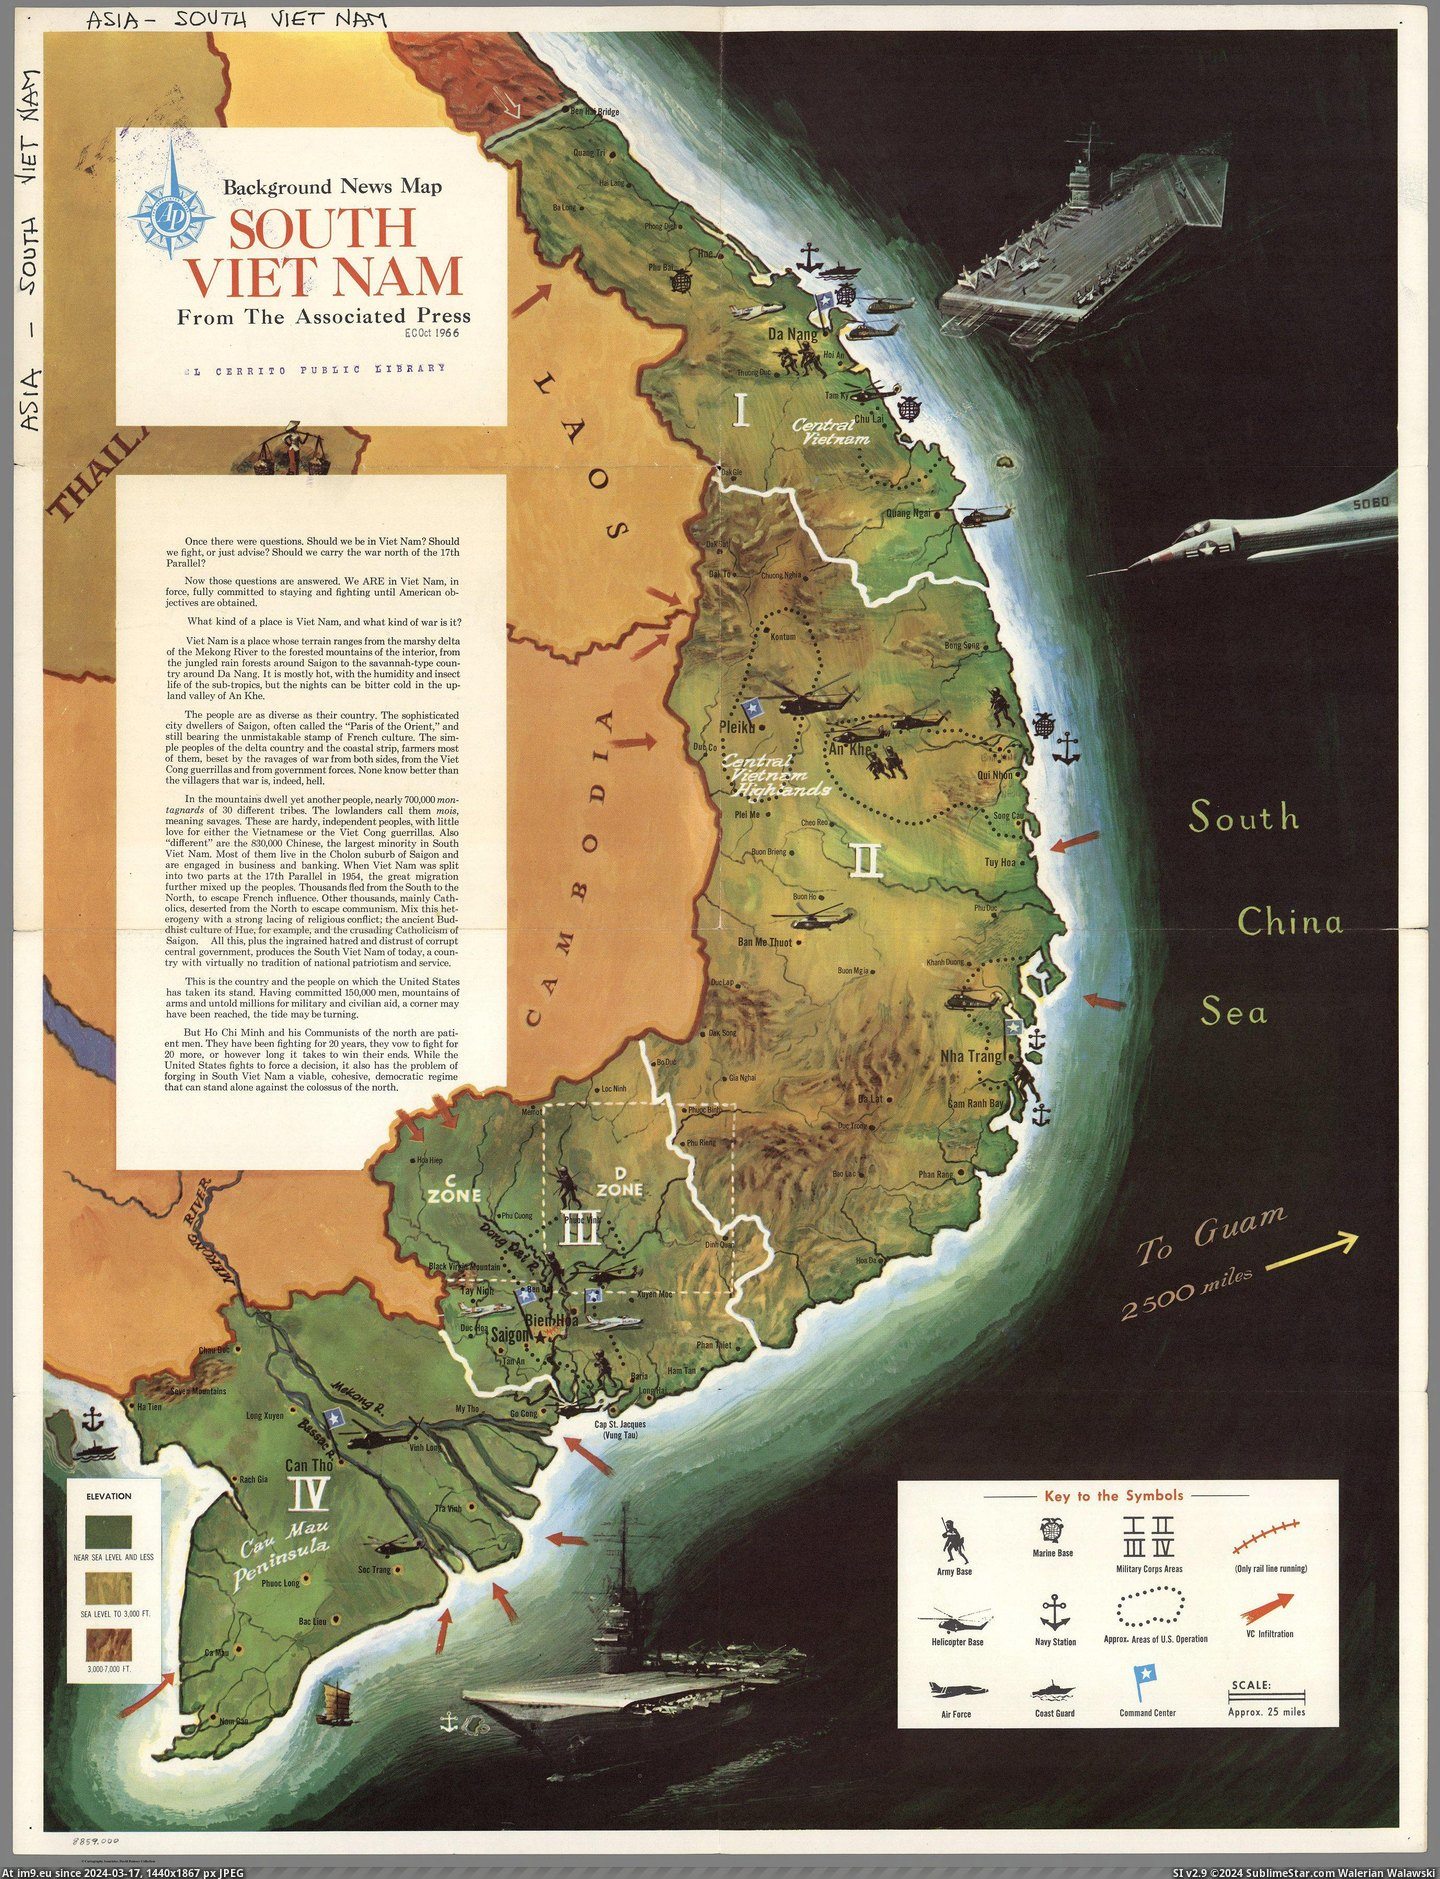 #Map #South #Vietnam #News #Press [Mapporn] Background News Map South Vietnam From The Associated Press (1966) [2755x3583] Pic. (Bild von album My r/MAPS favs))